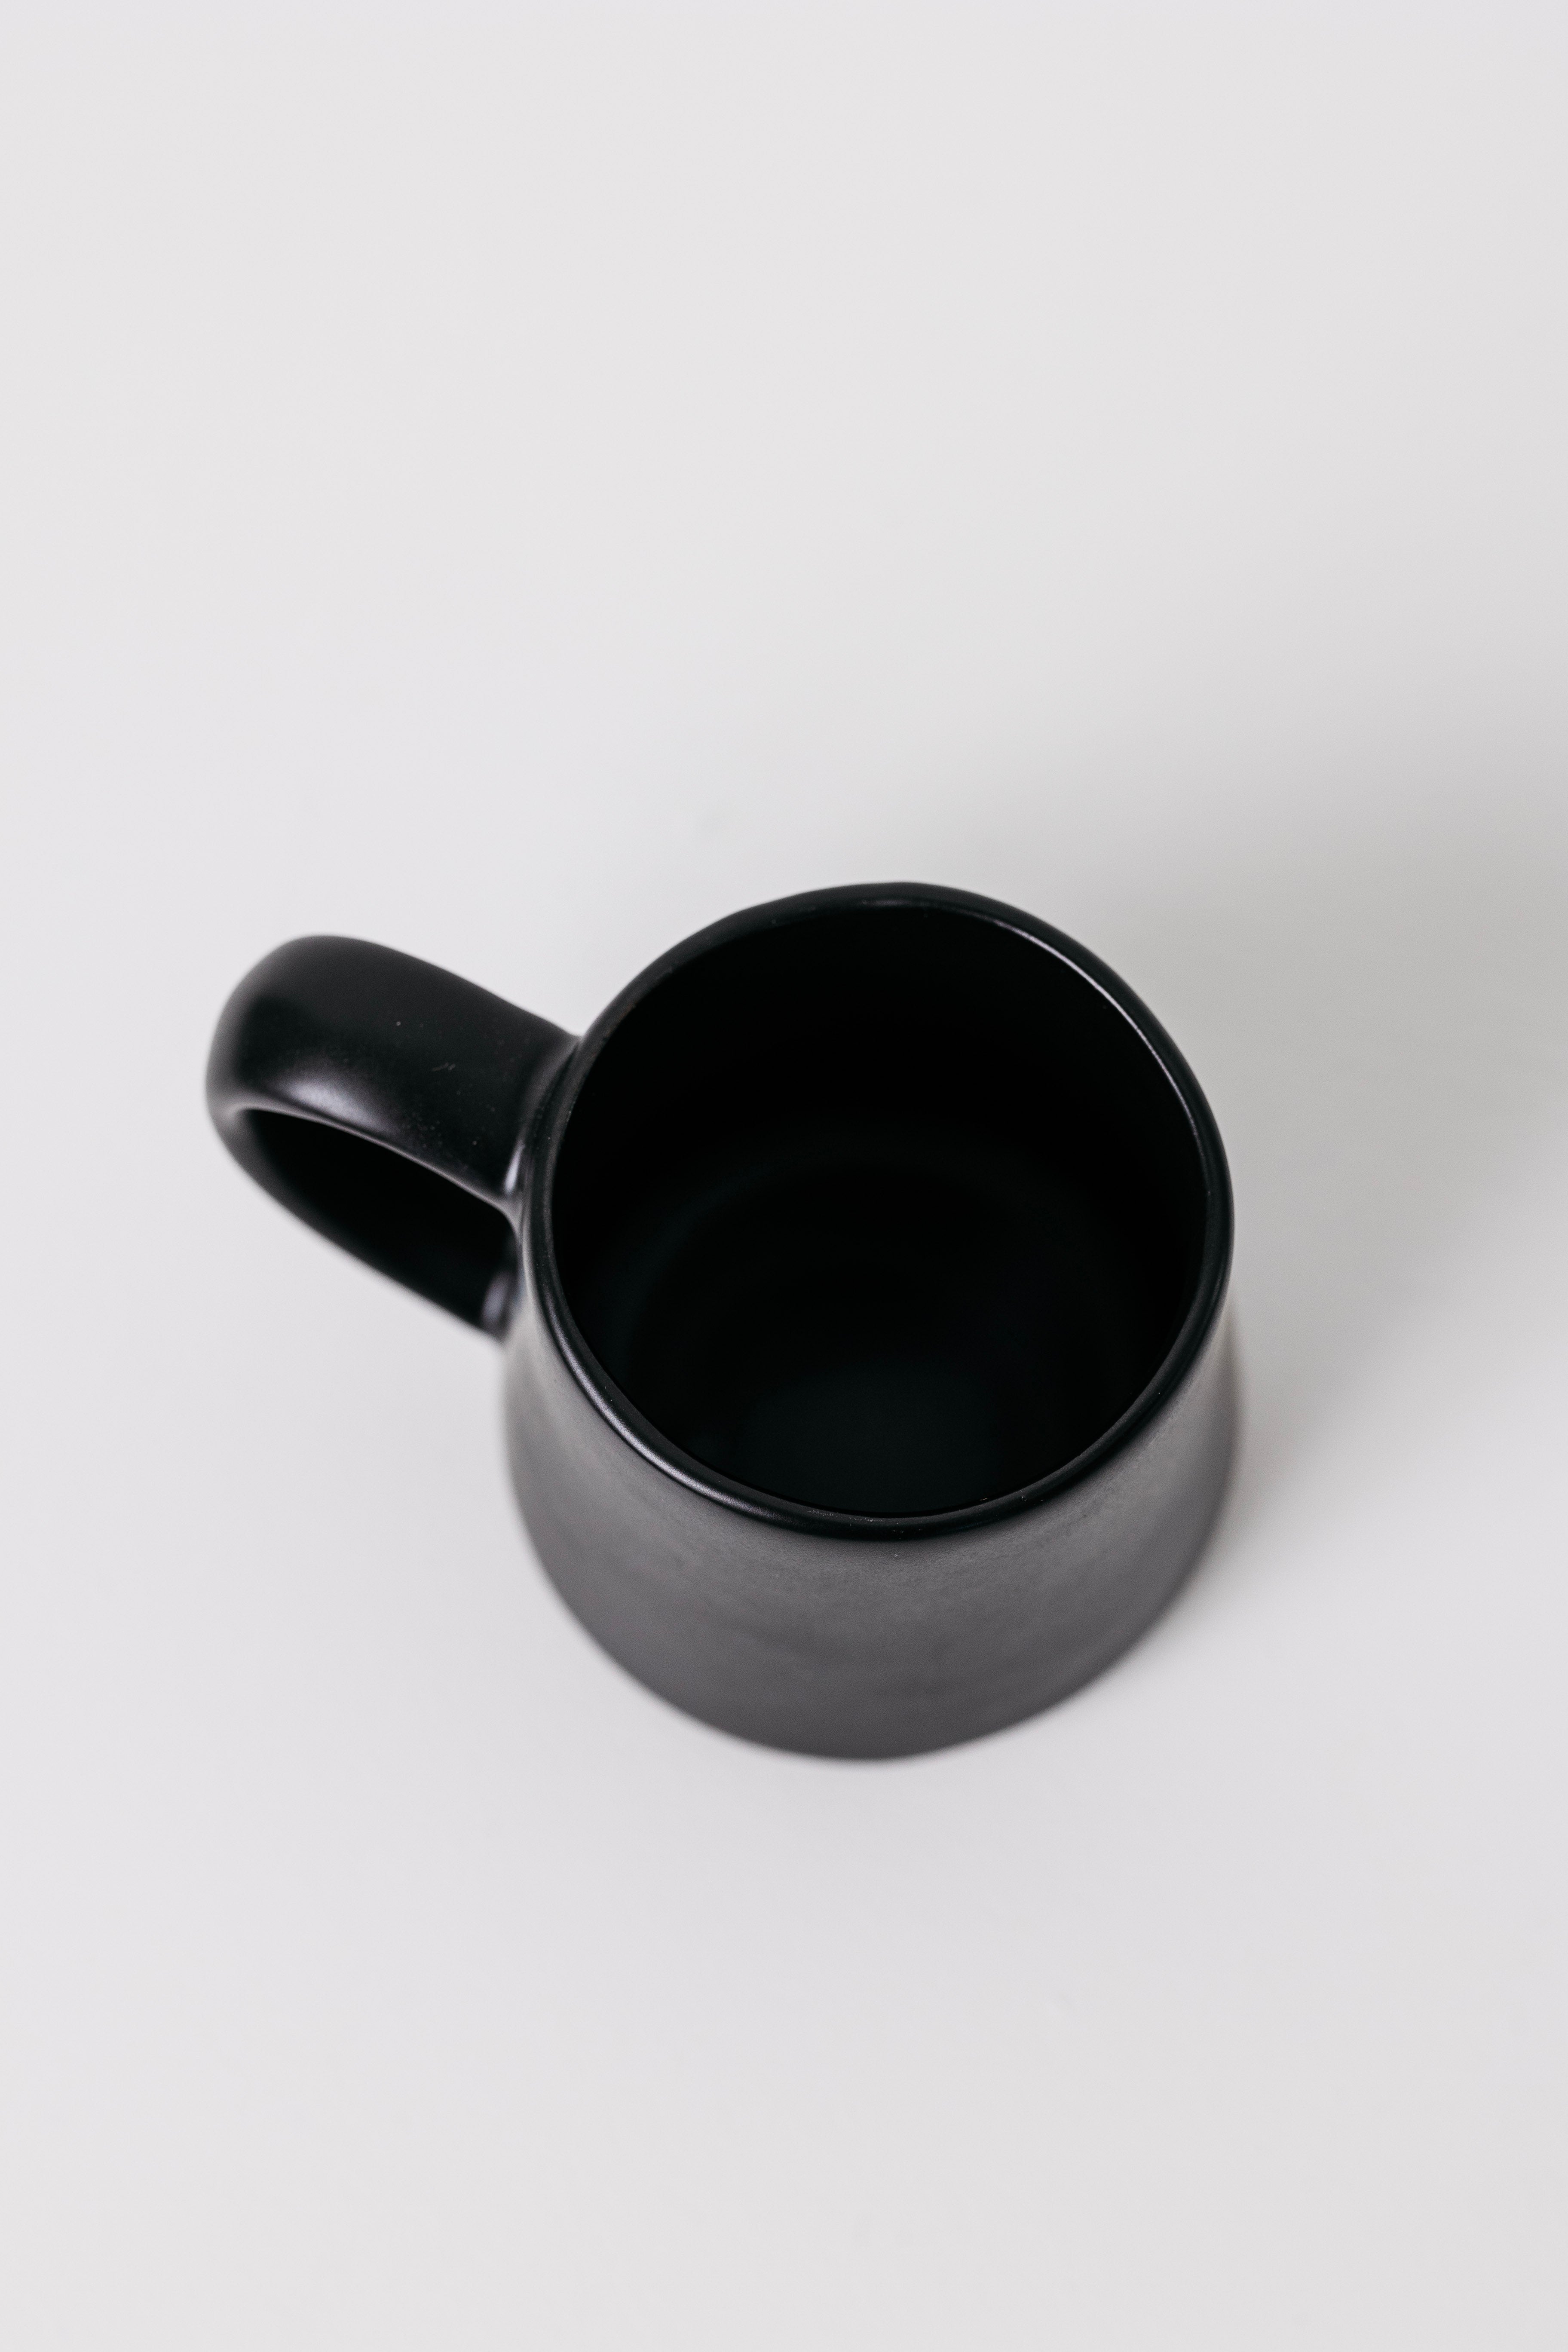 Dean Stoneware Coffee Mug - Matte Black - Set of 4